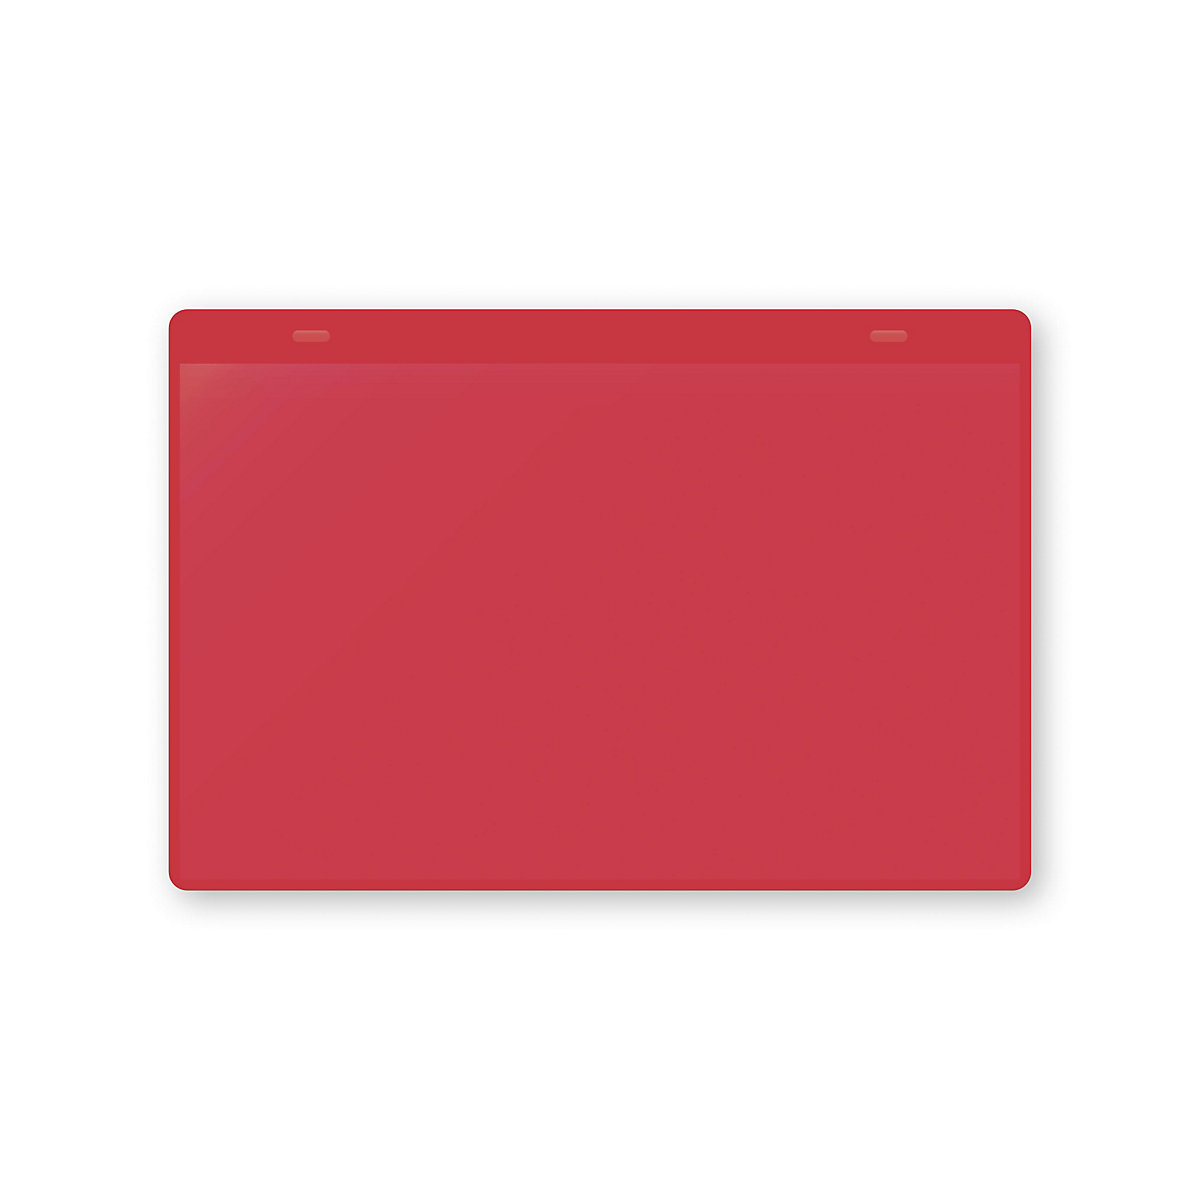 Öntapadó dokumentumtartó tasakok, DIN A5, fekvő, cs. e. 50 db, piros